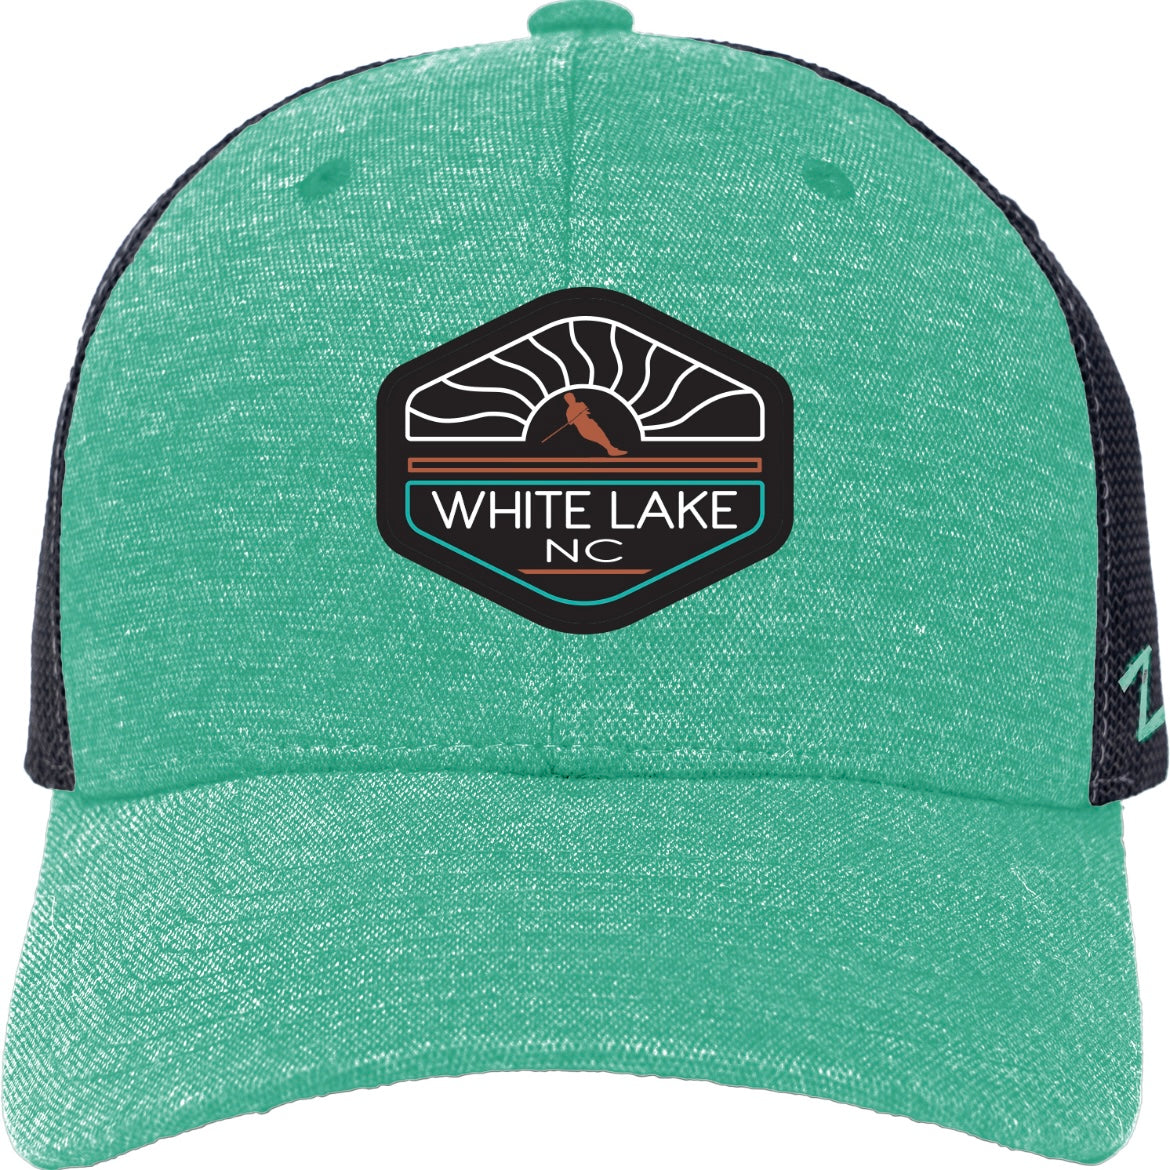 White Lake Hat - Hillhelm w/Skier